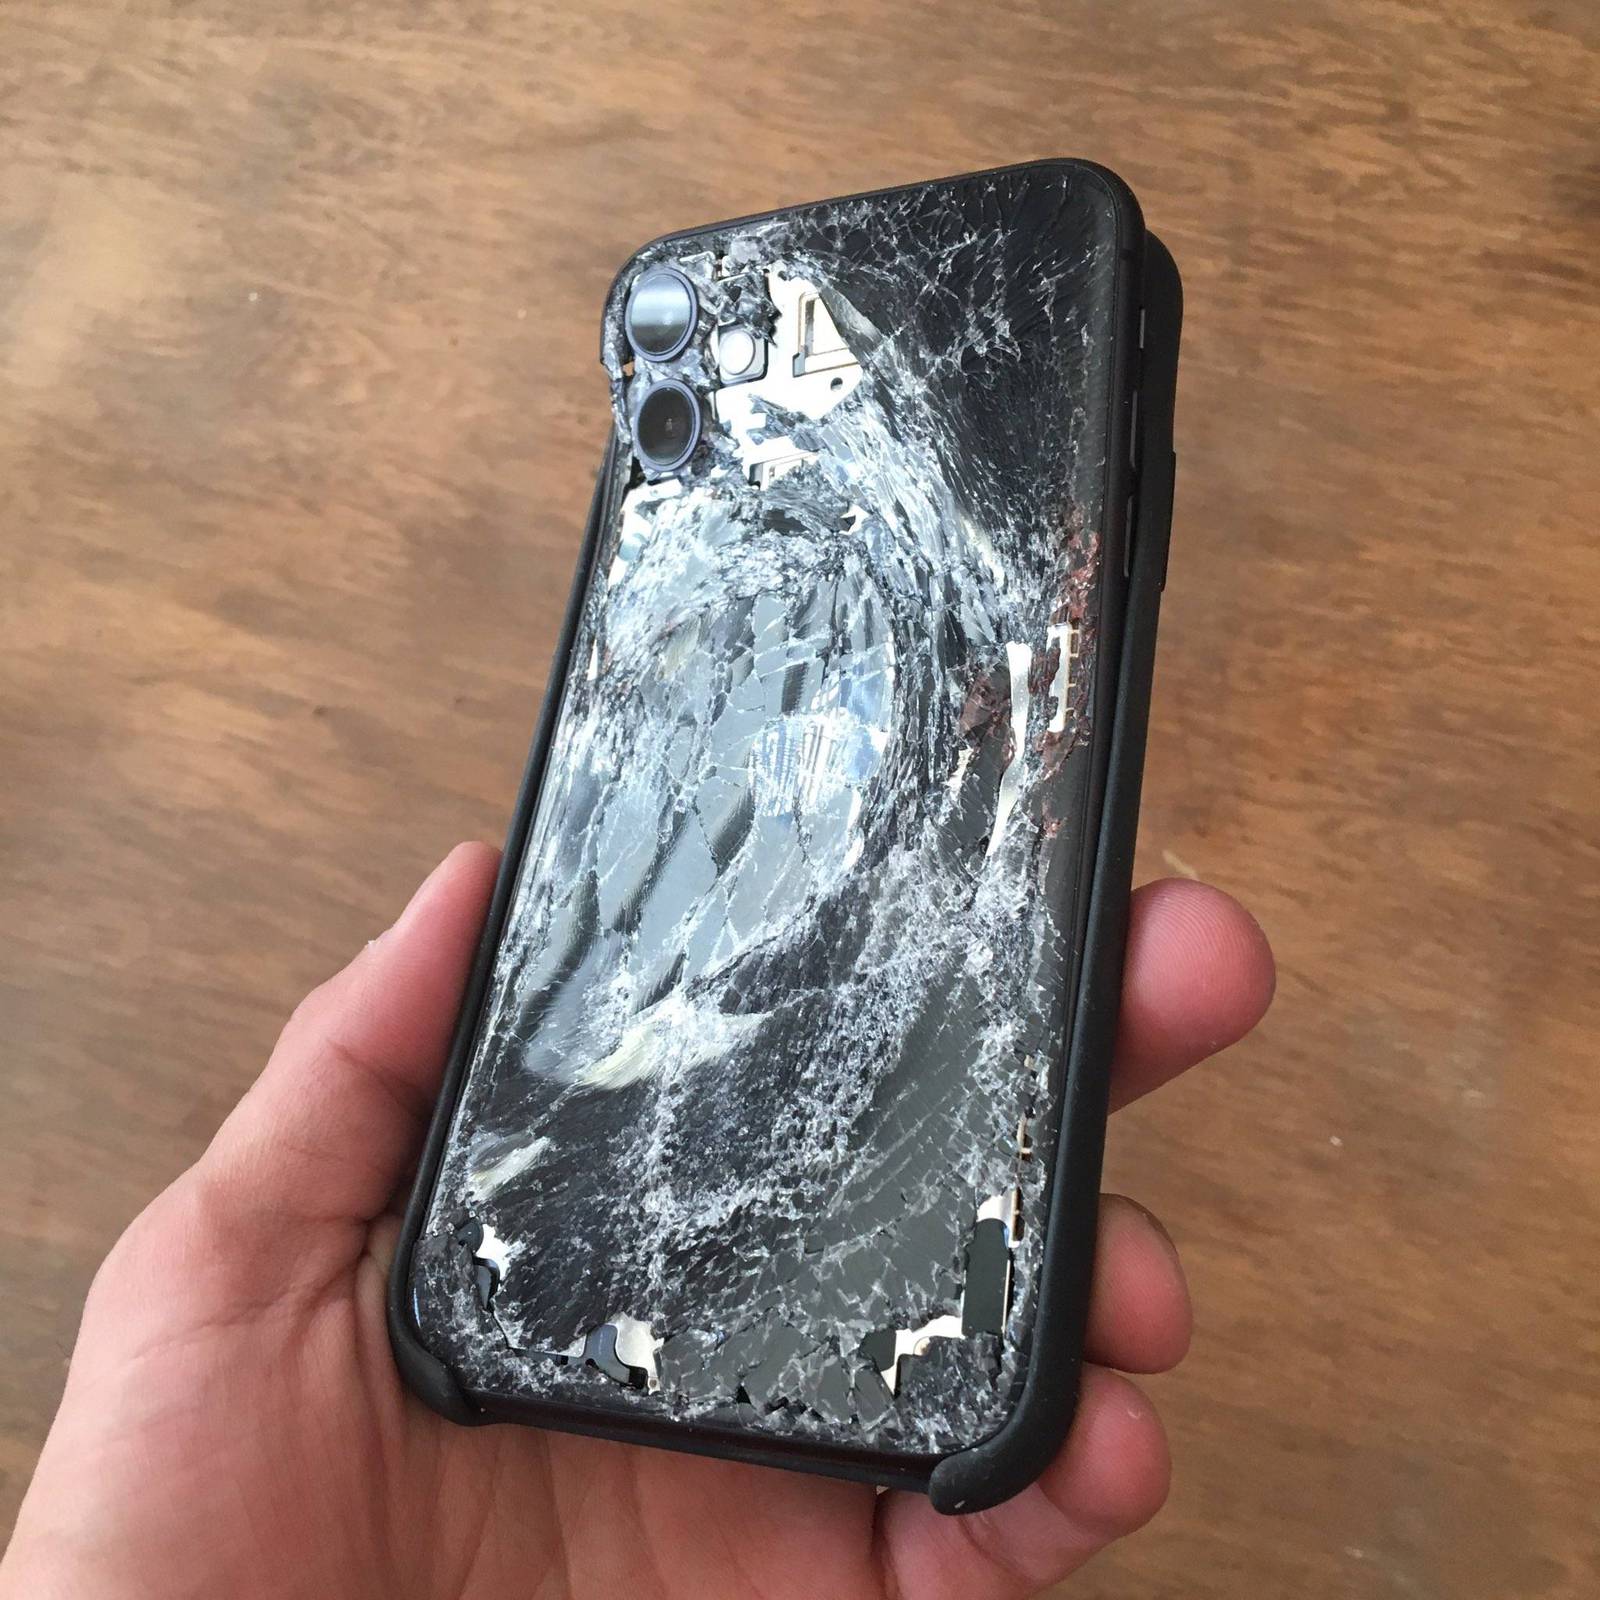 iPhone 11 recibe impacto de una bomba lacrimógena en Chile #ChileDesperto